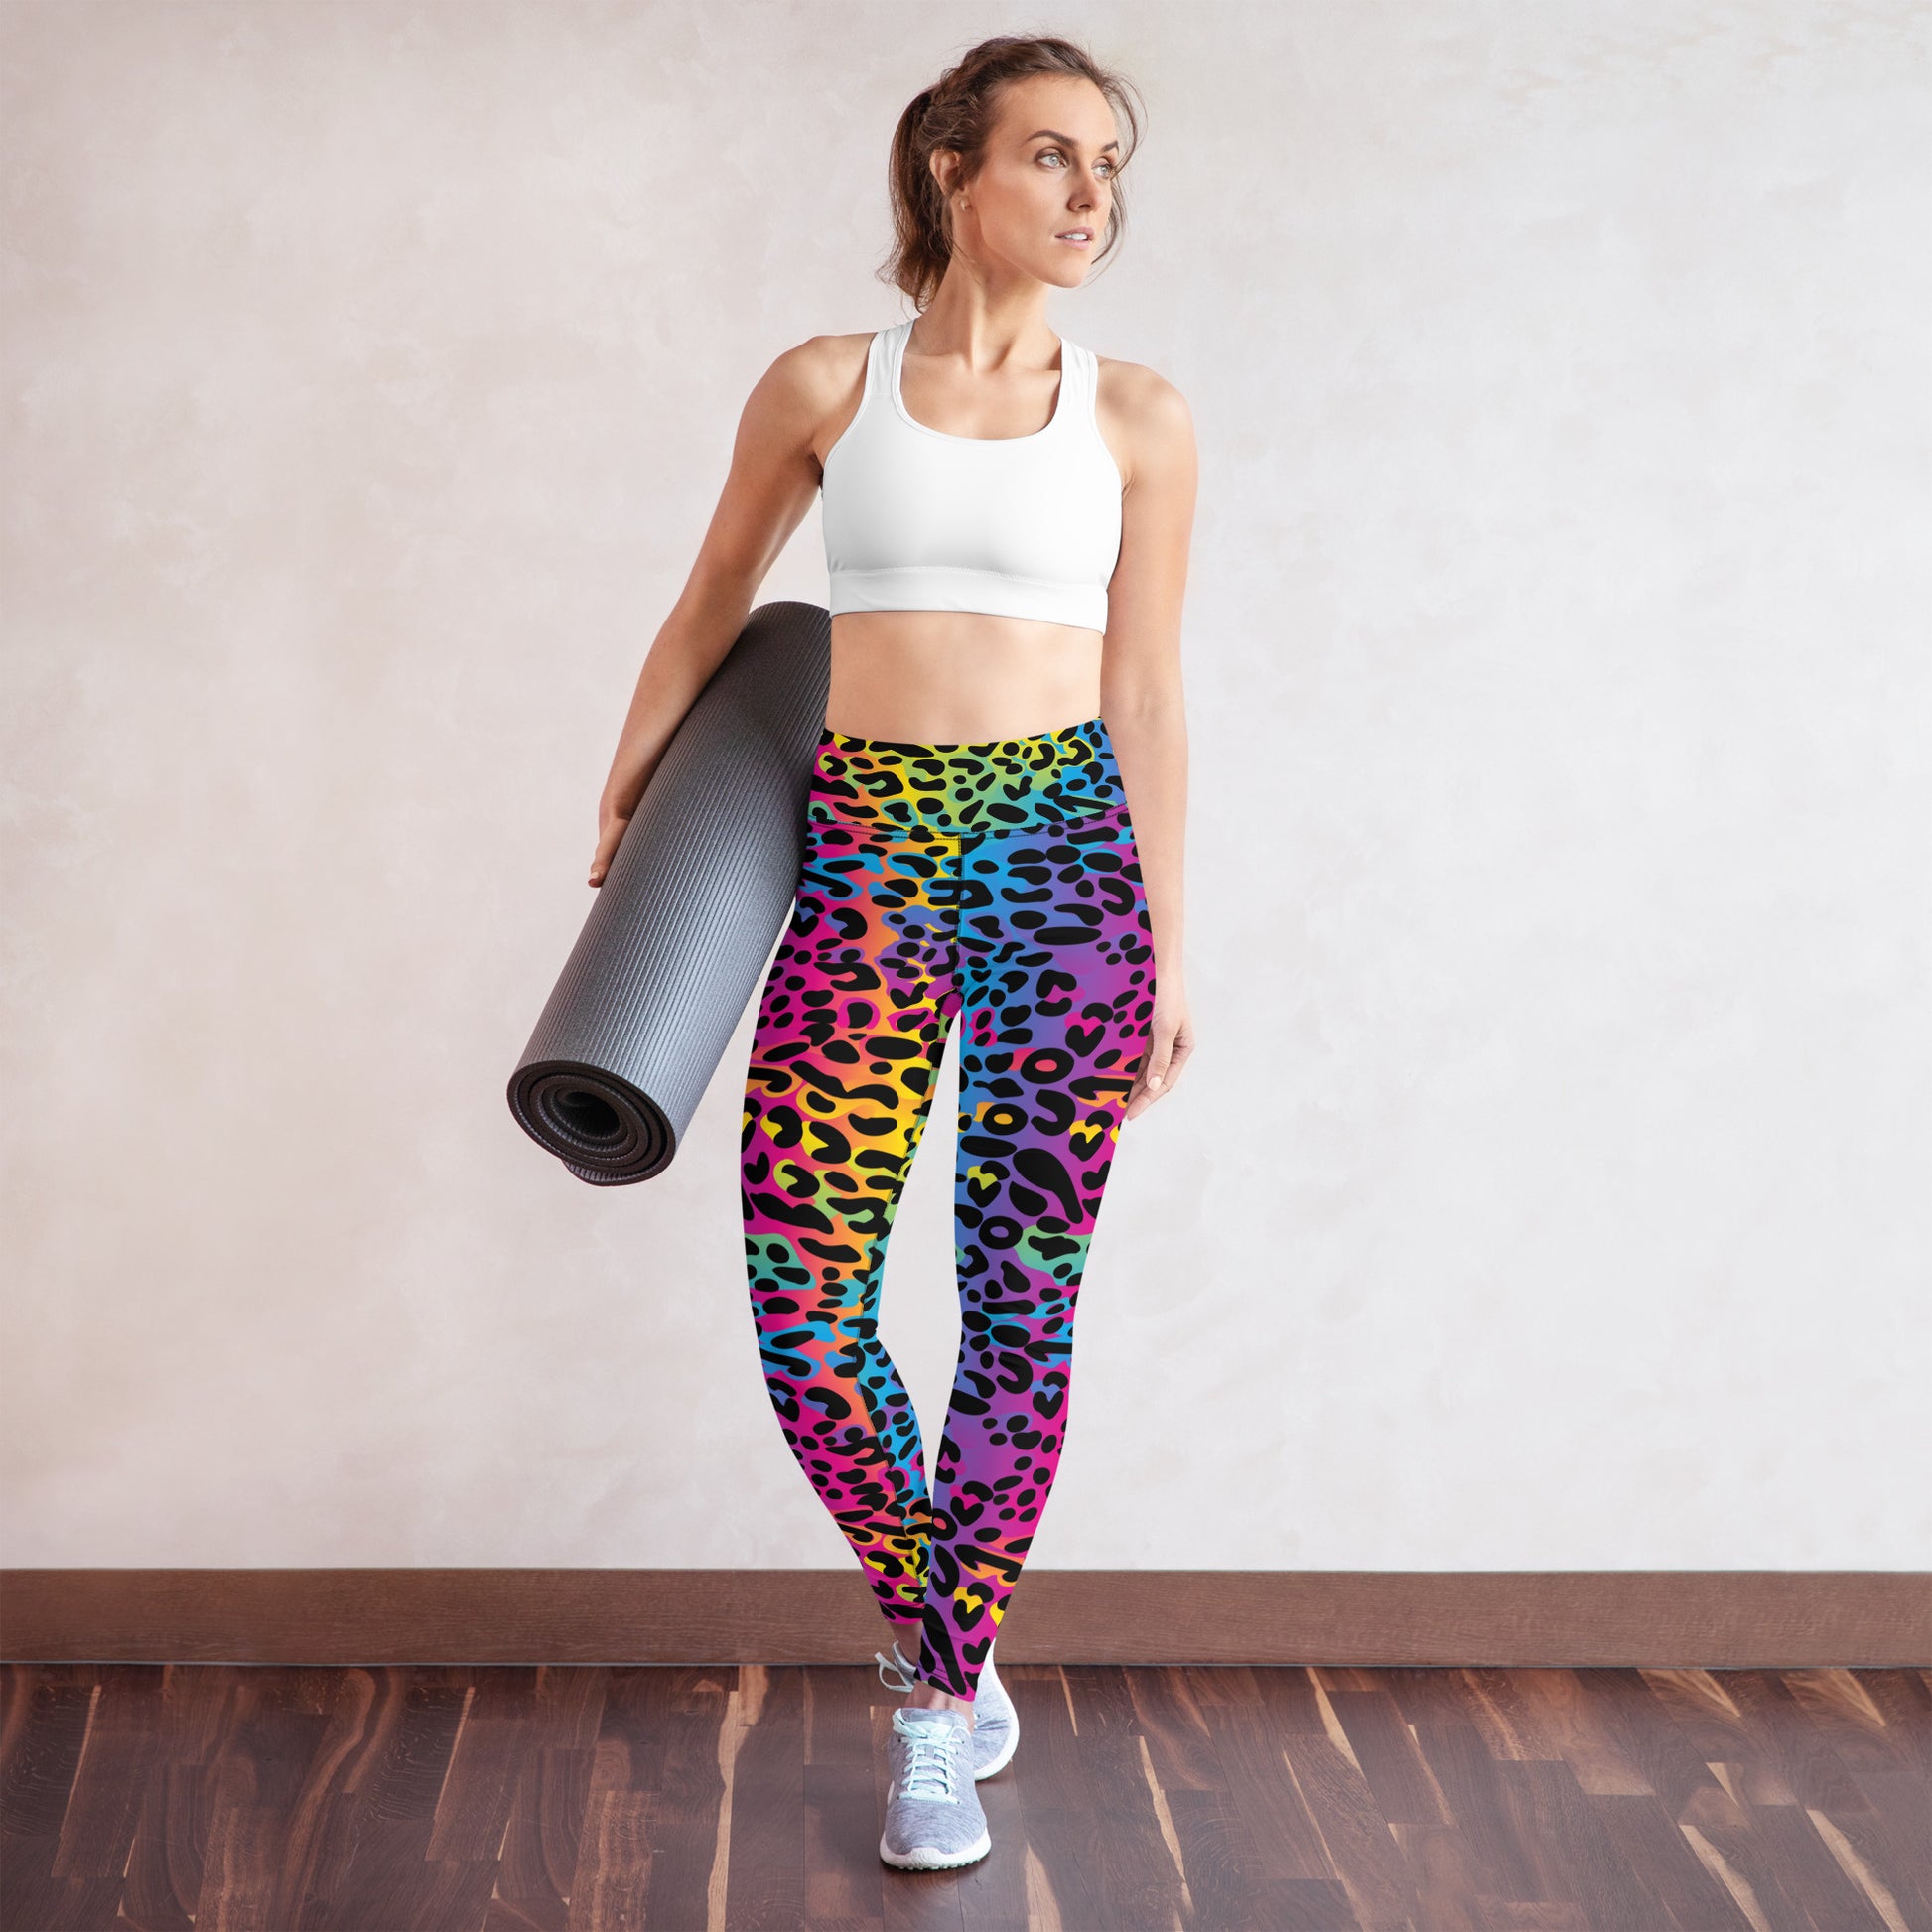 914 Sports Designs Leopard Print Leggings for Women - Women's